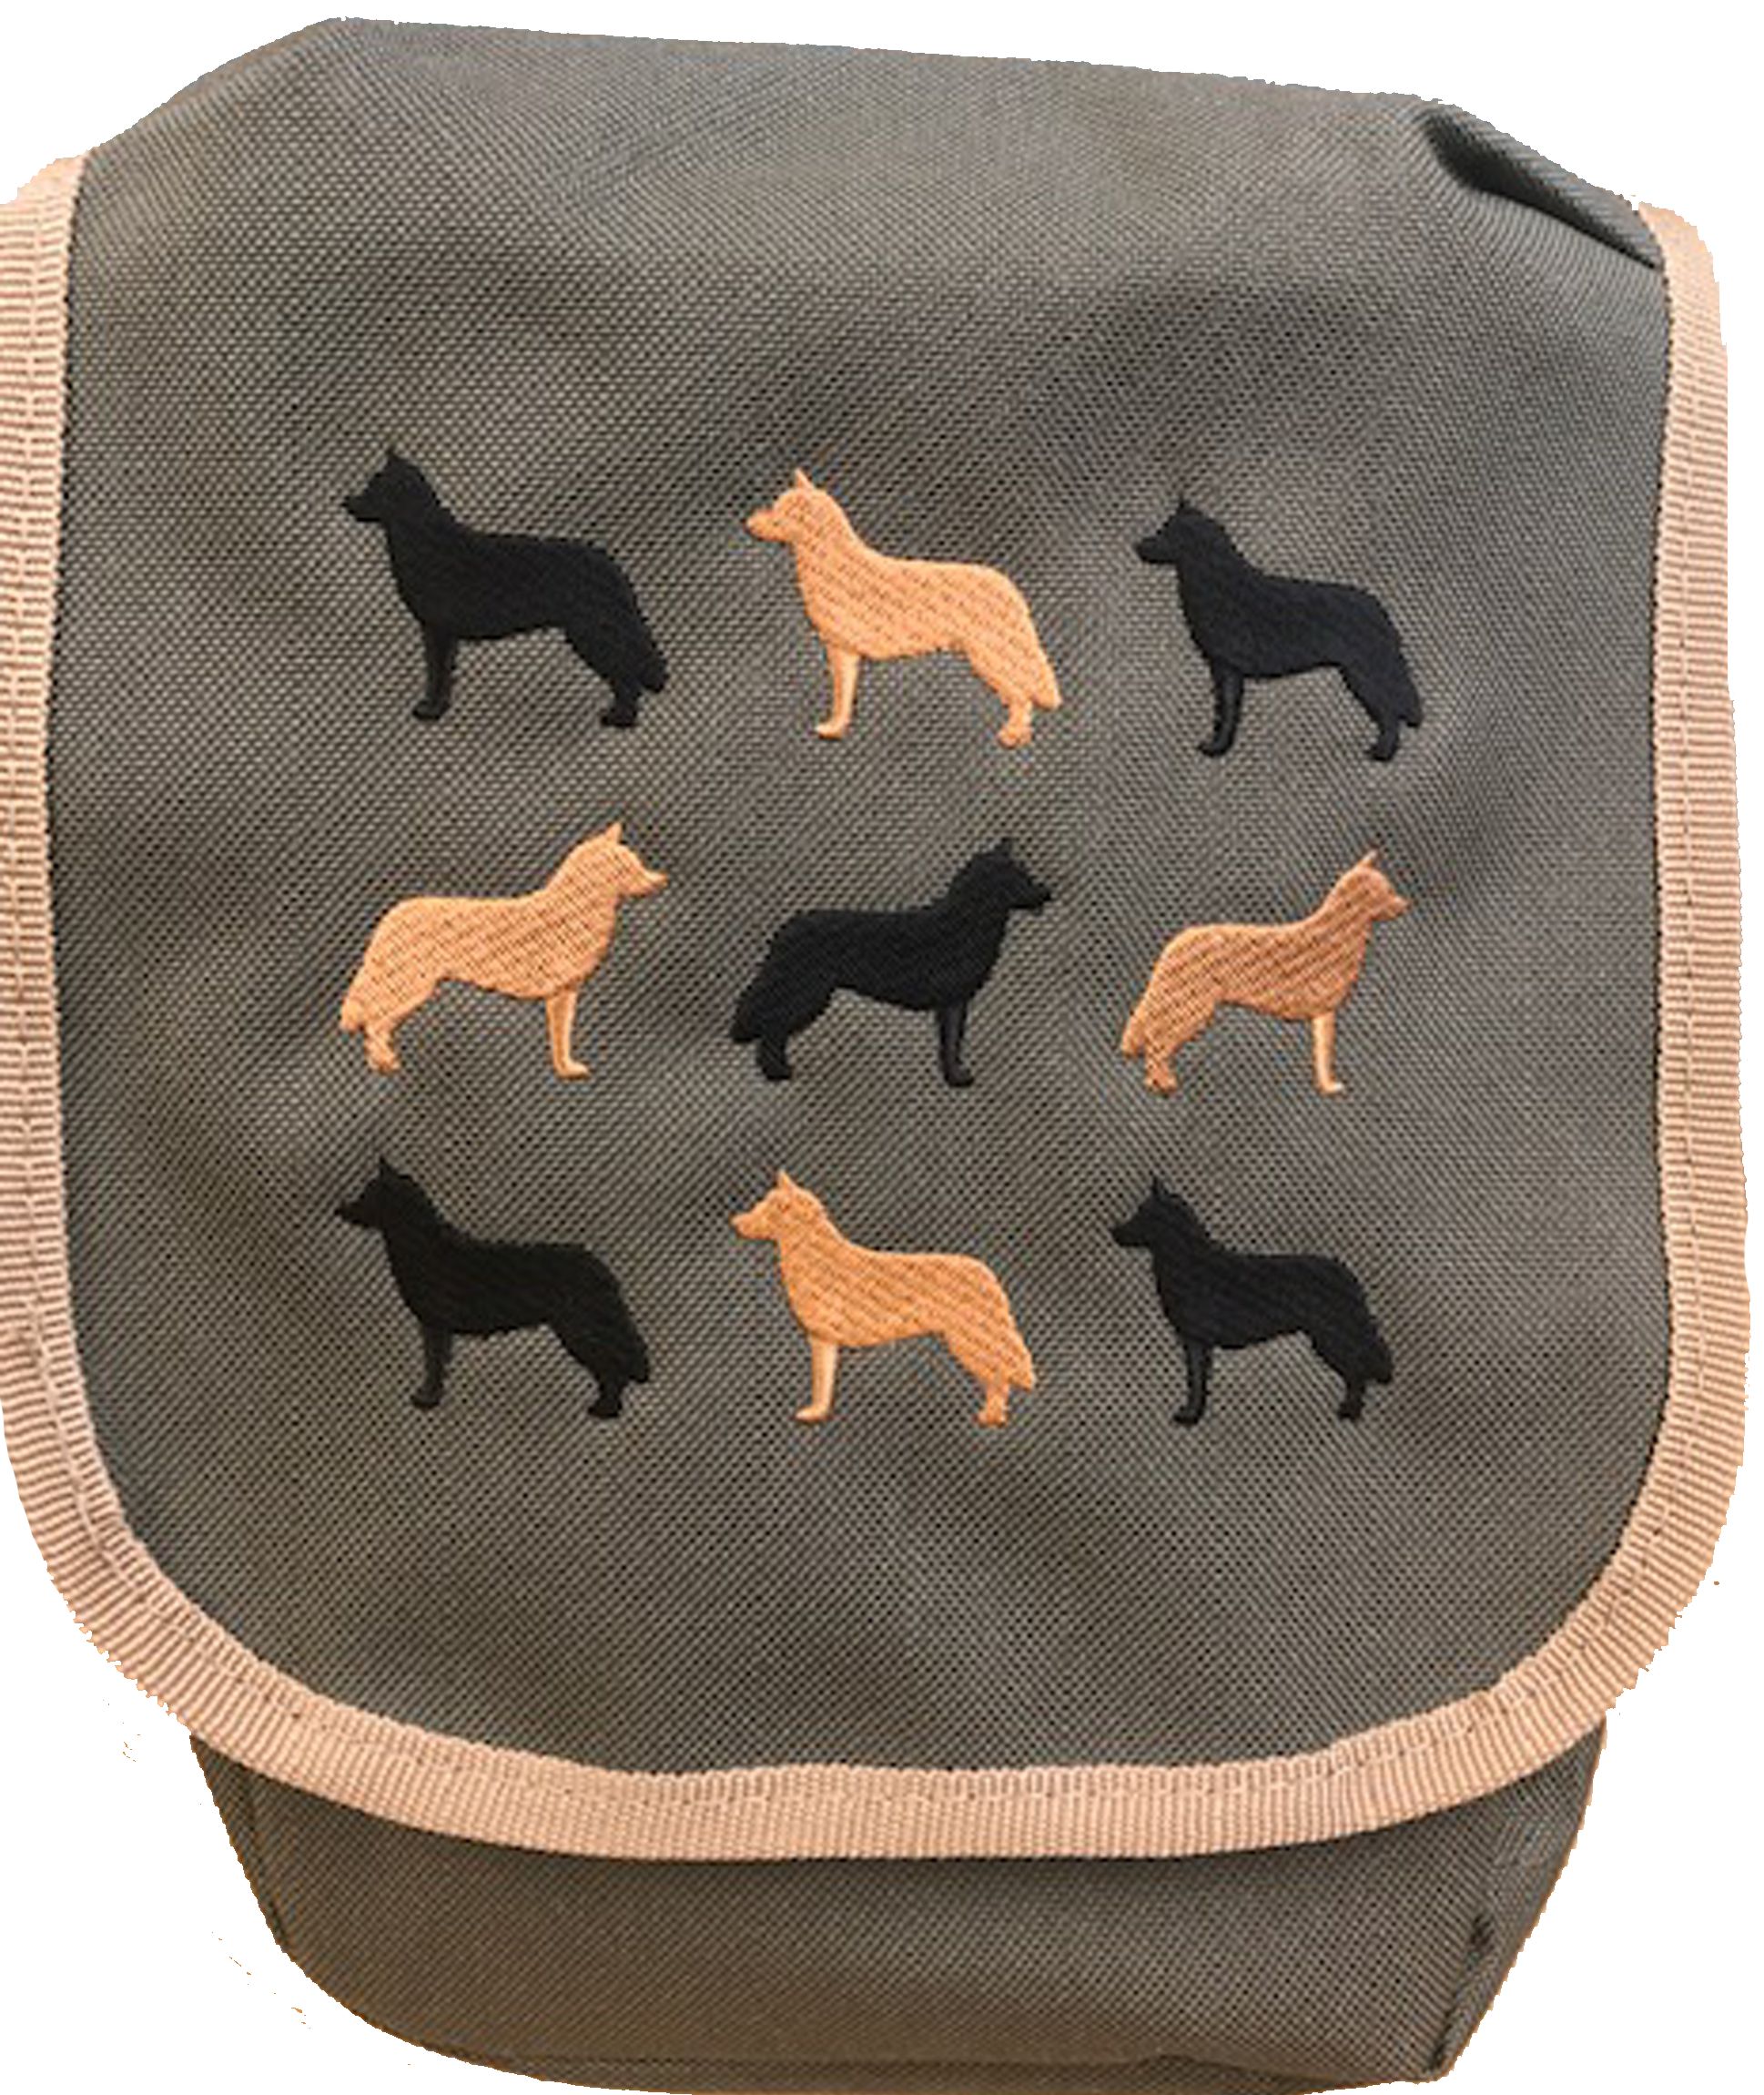 Siberian Husky embroidered cross body bag